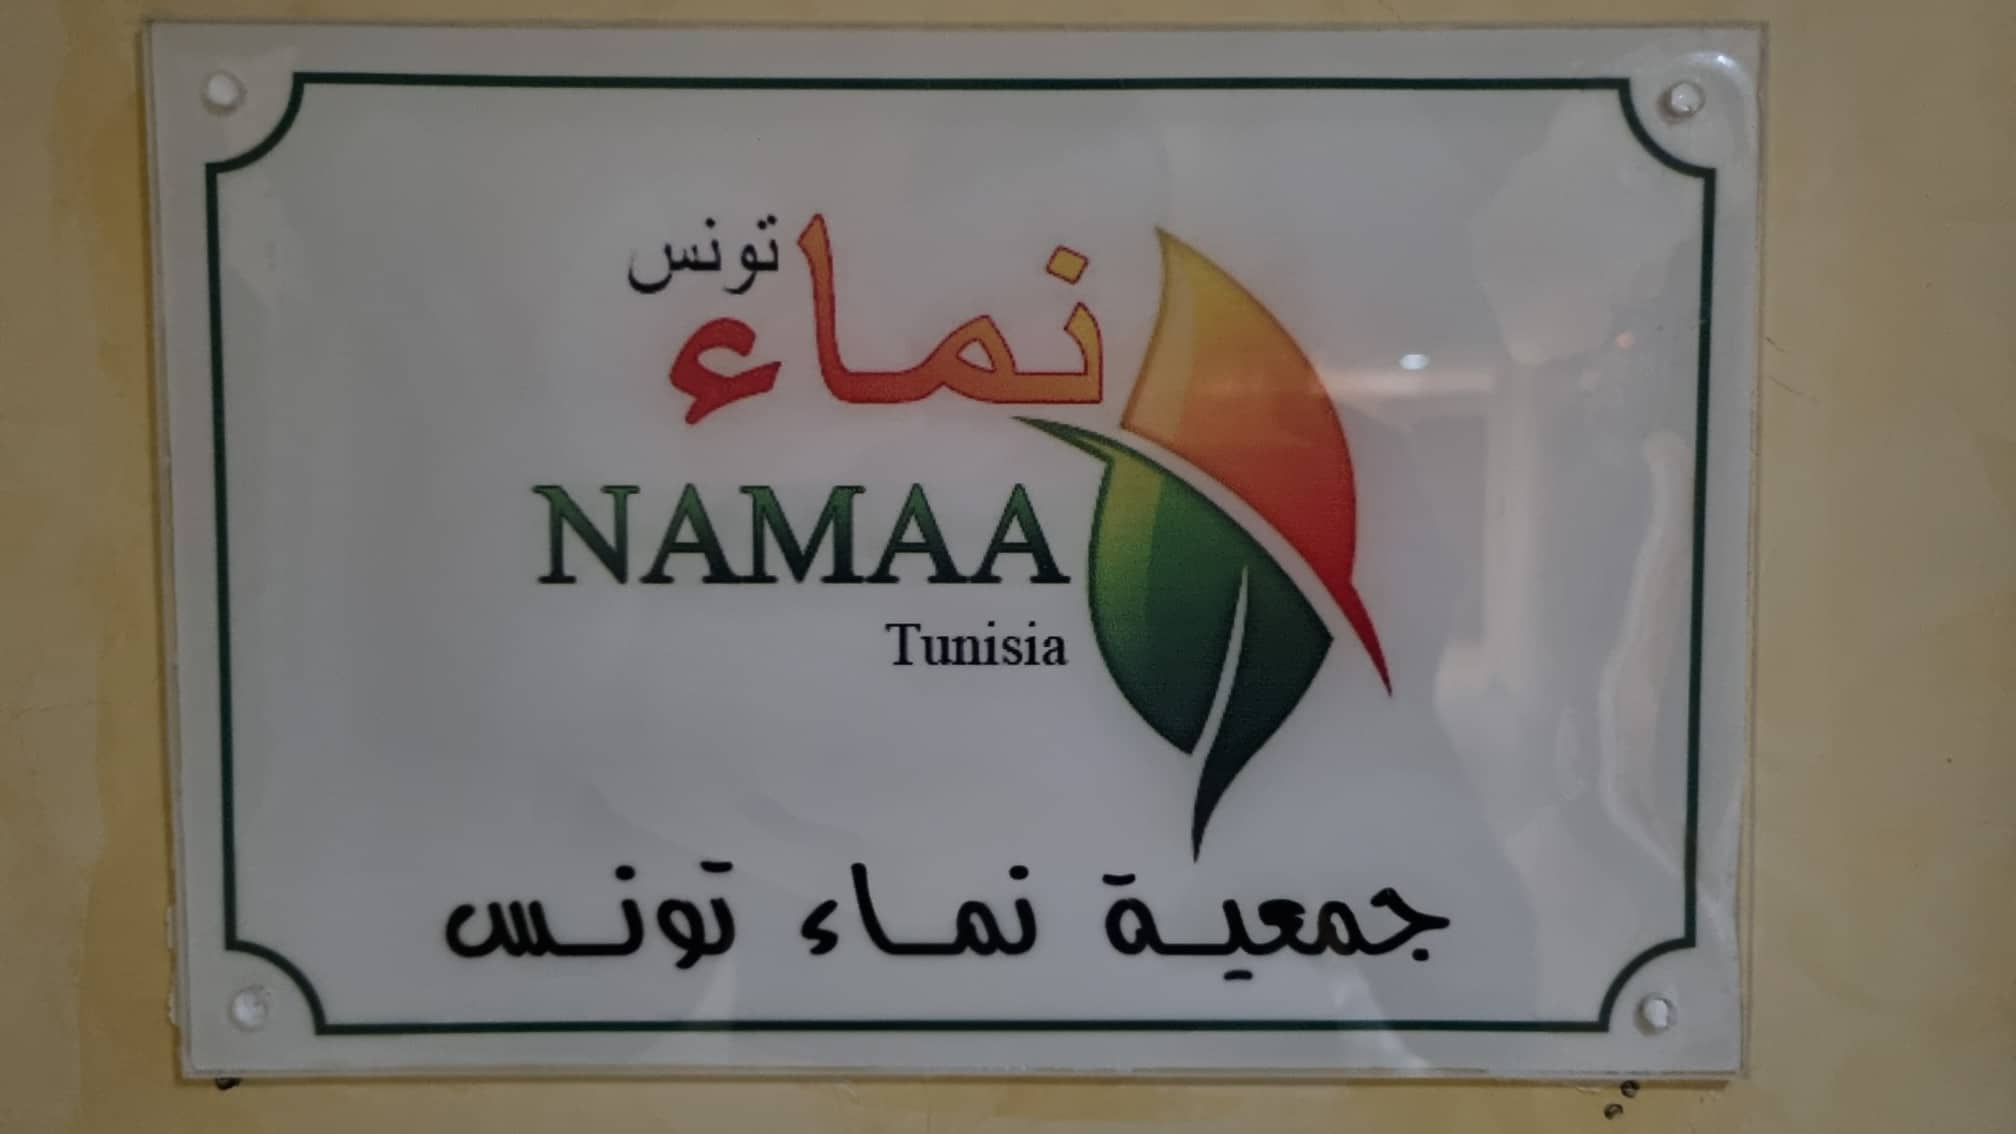 Comité de défense: L’affaire de l’association “Namaa” a été politisée